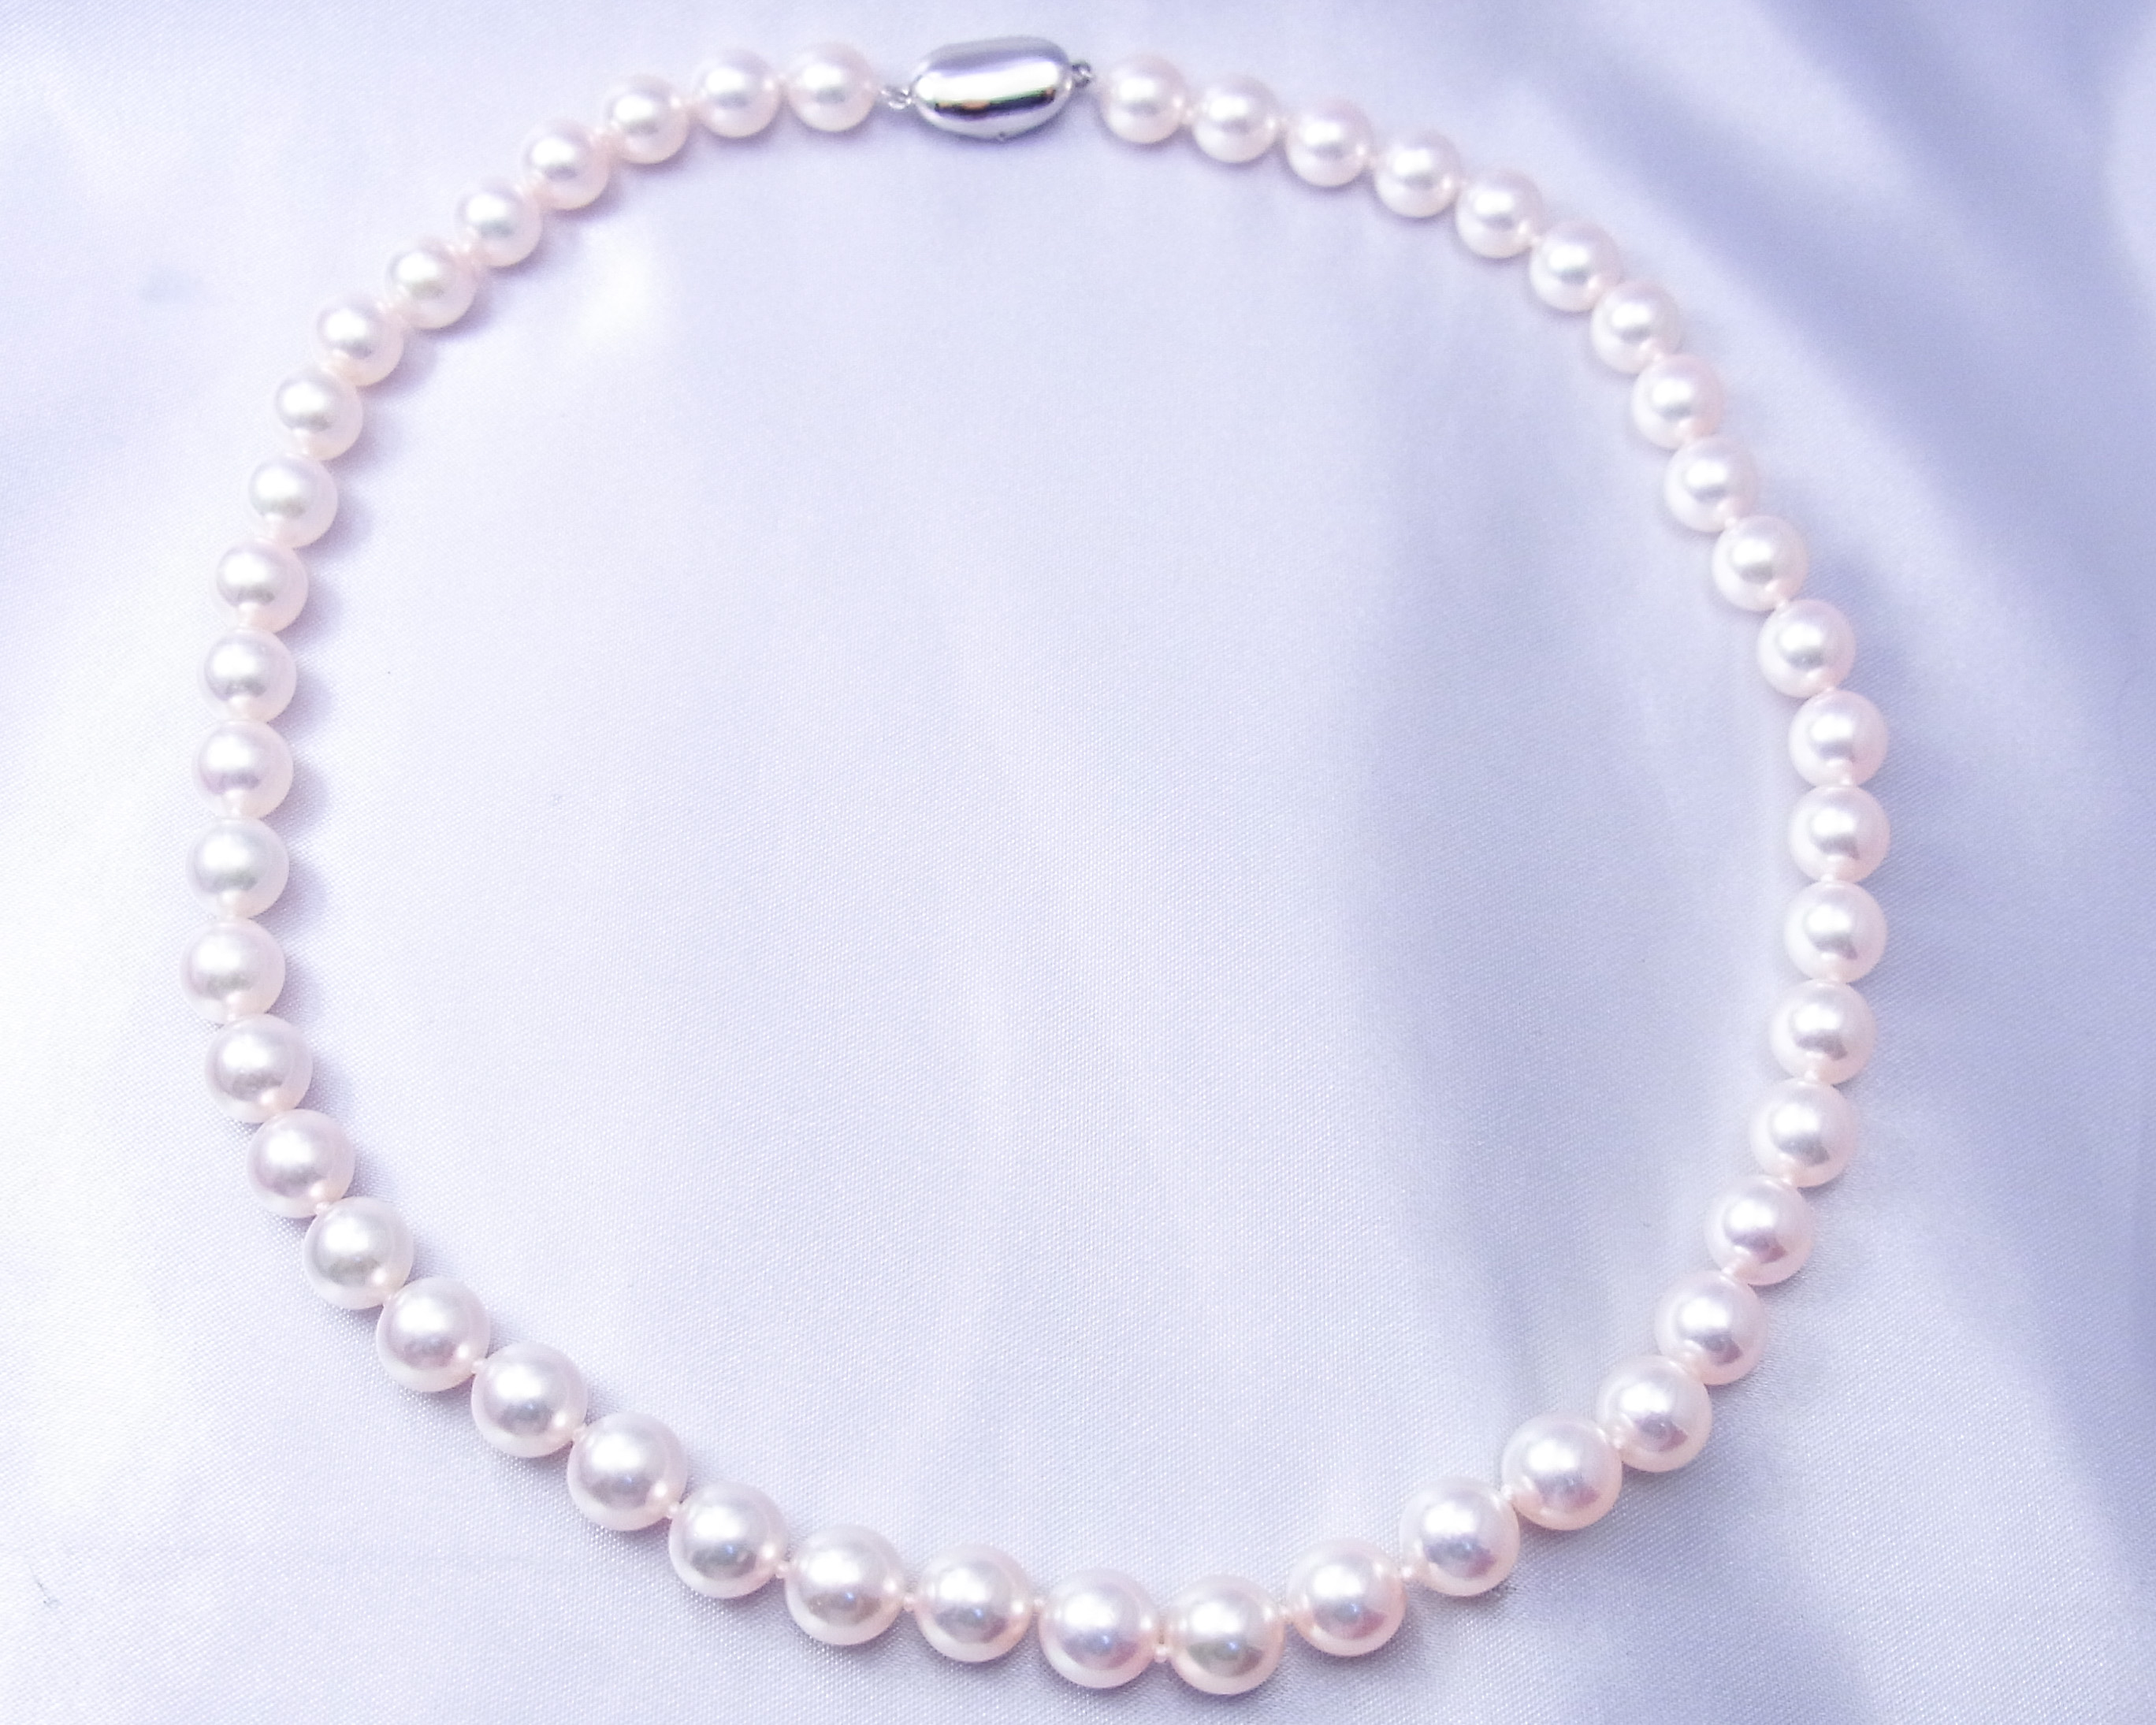 あこや真珠のネックレス | オリジナル商品 | 文京区 湯島の宝飾品なら十字屋商店へ